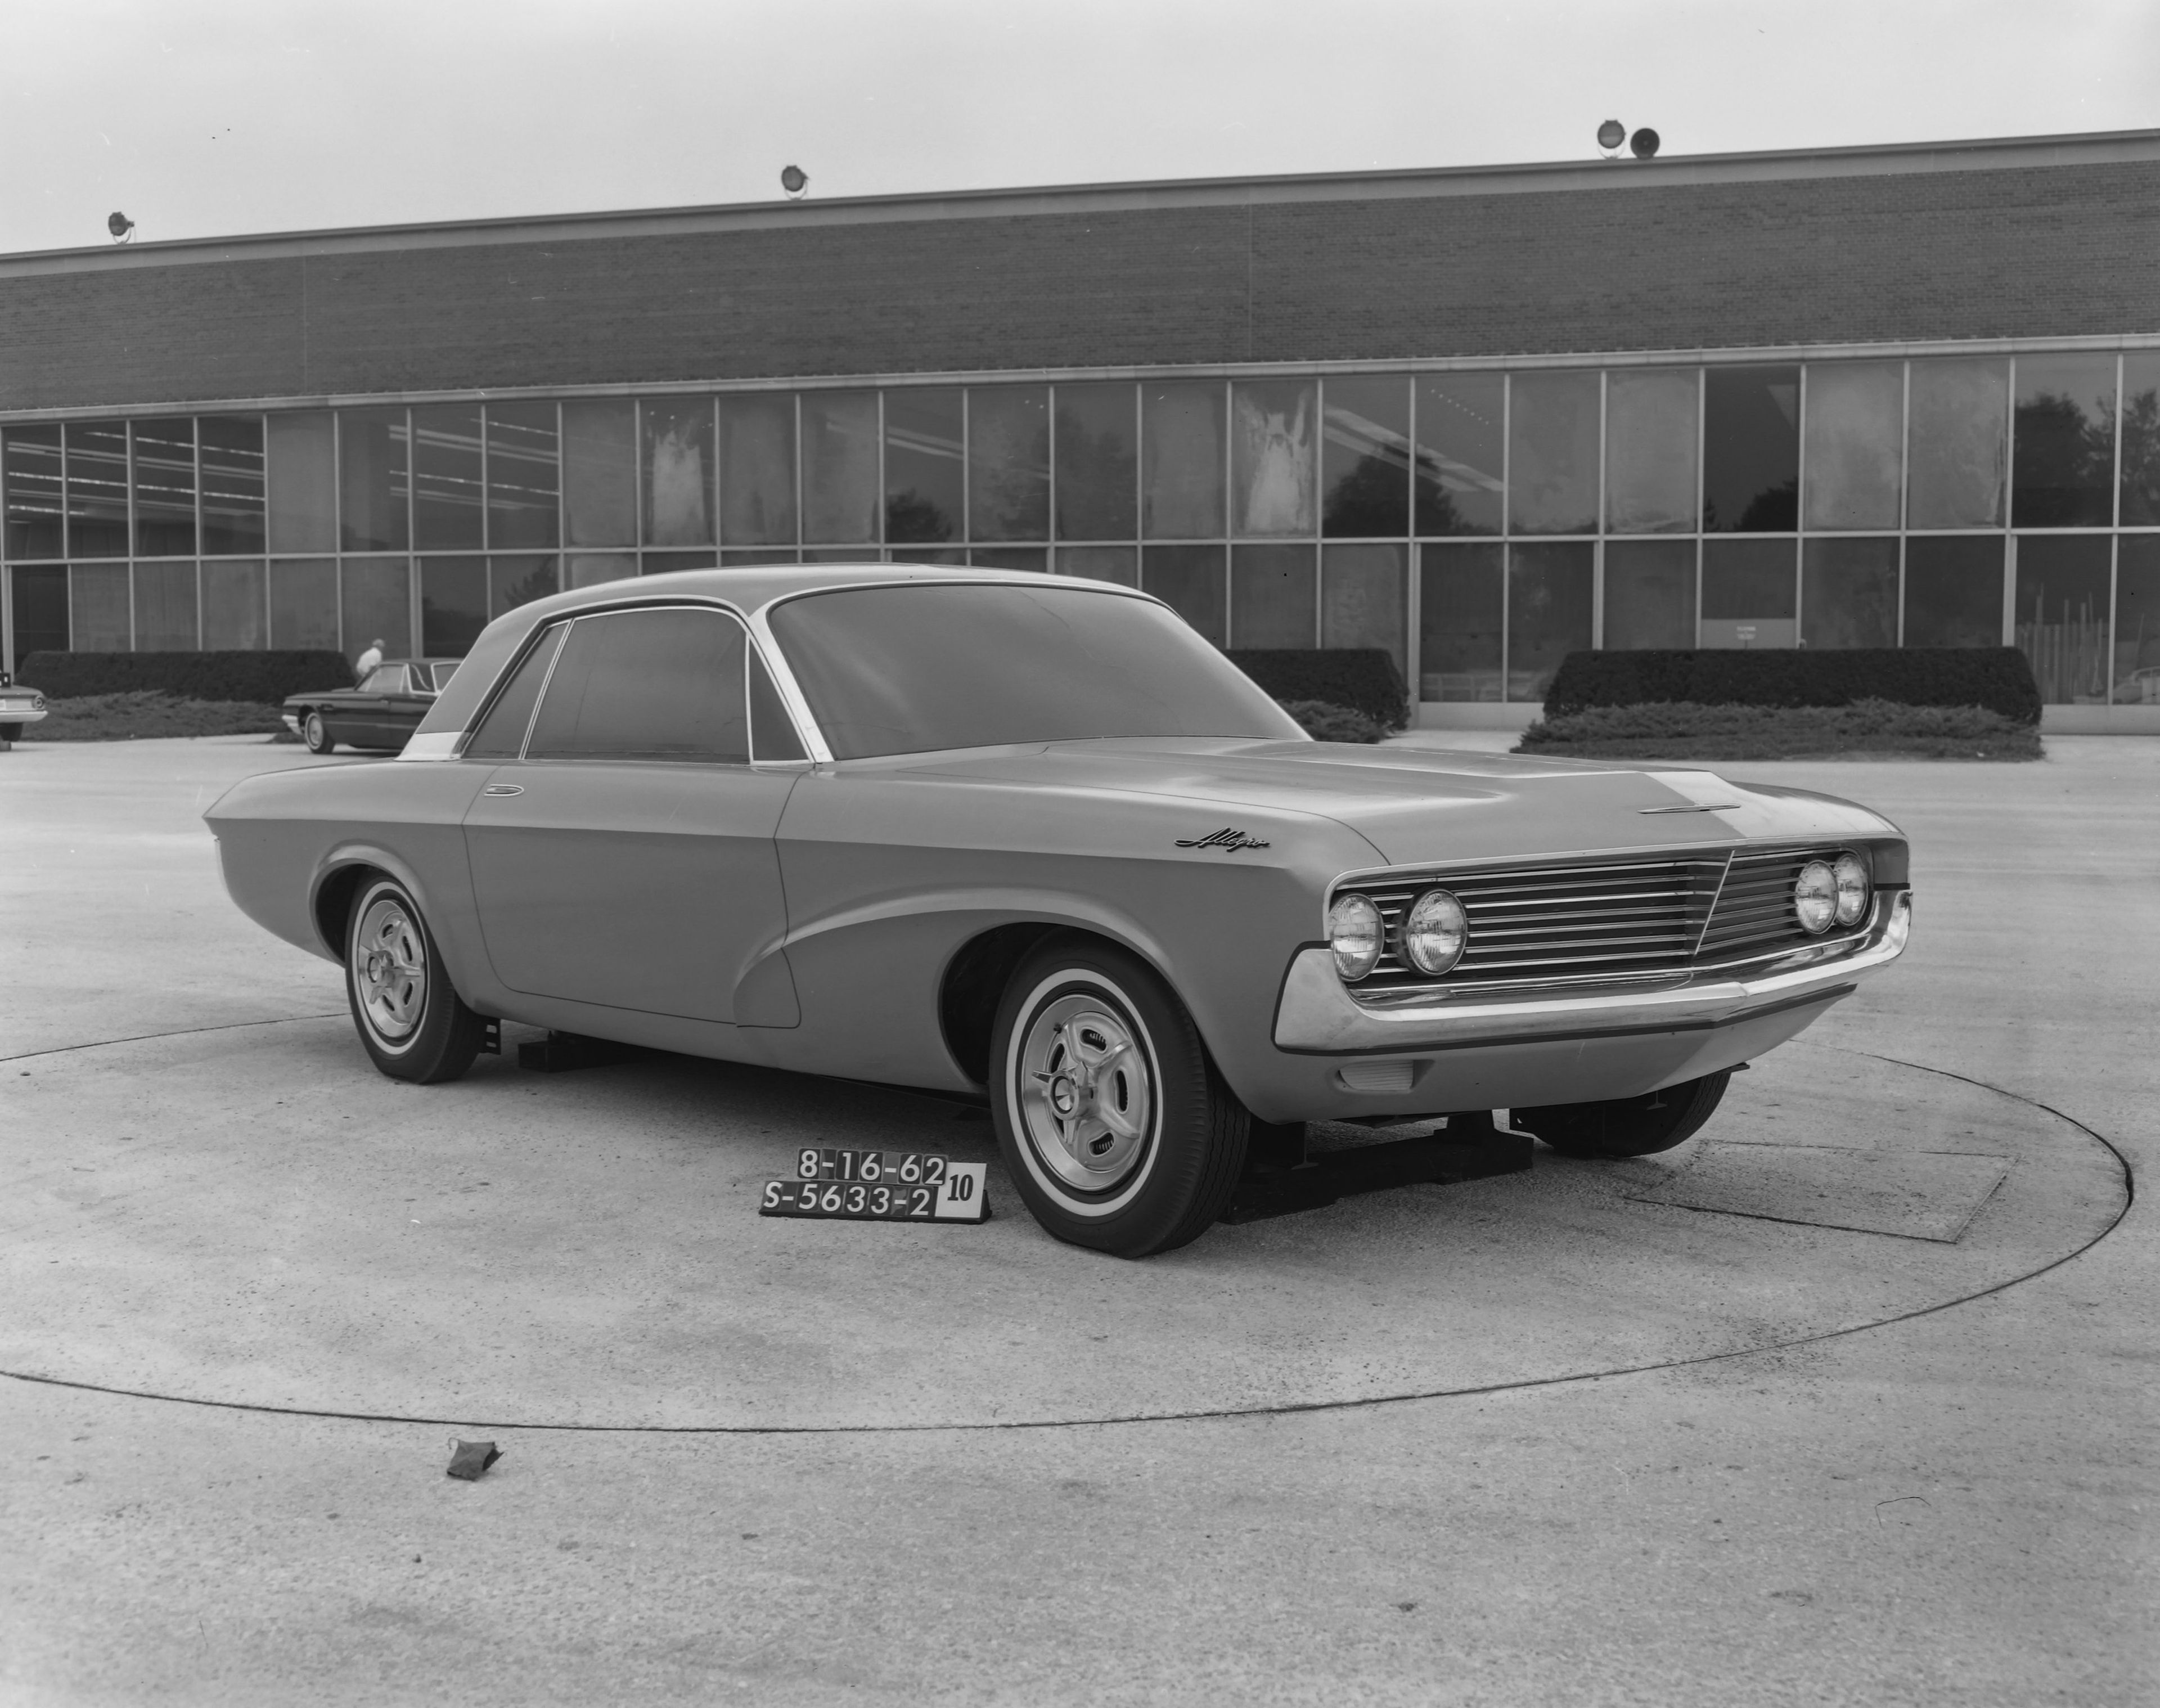 Prototipo de Advanced Products Studio como propuesta de diseño para el primer Mustang en 1962